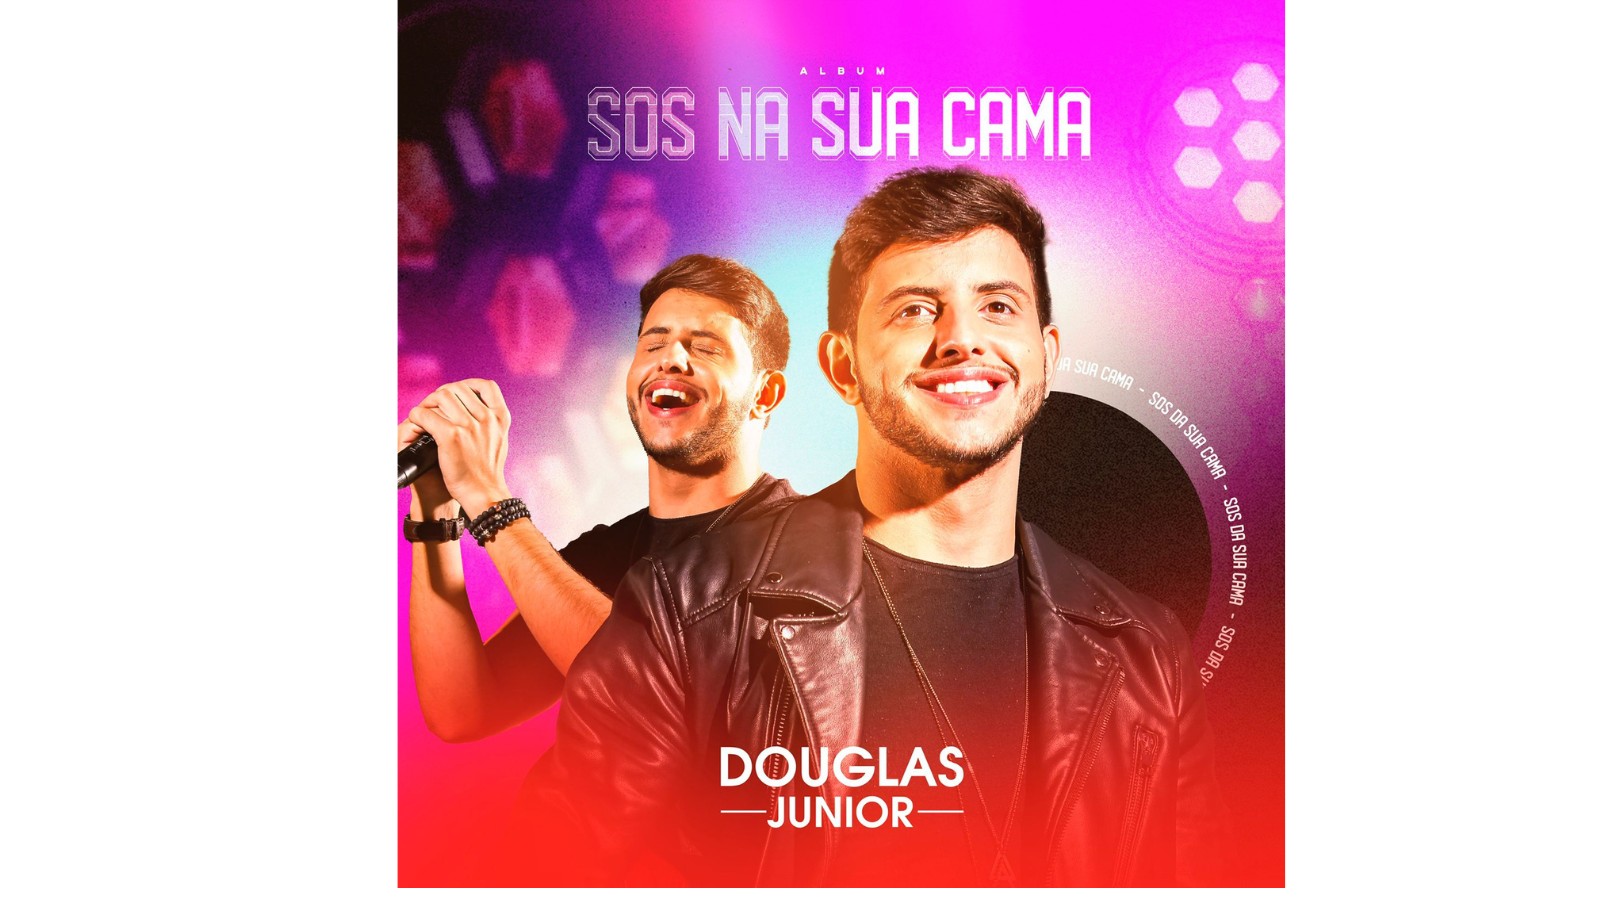 O cantor Douglas Júnior lança novo sucesso “SOS da sua cama”